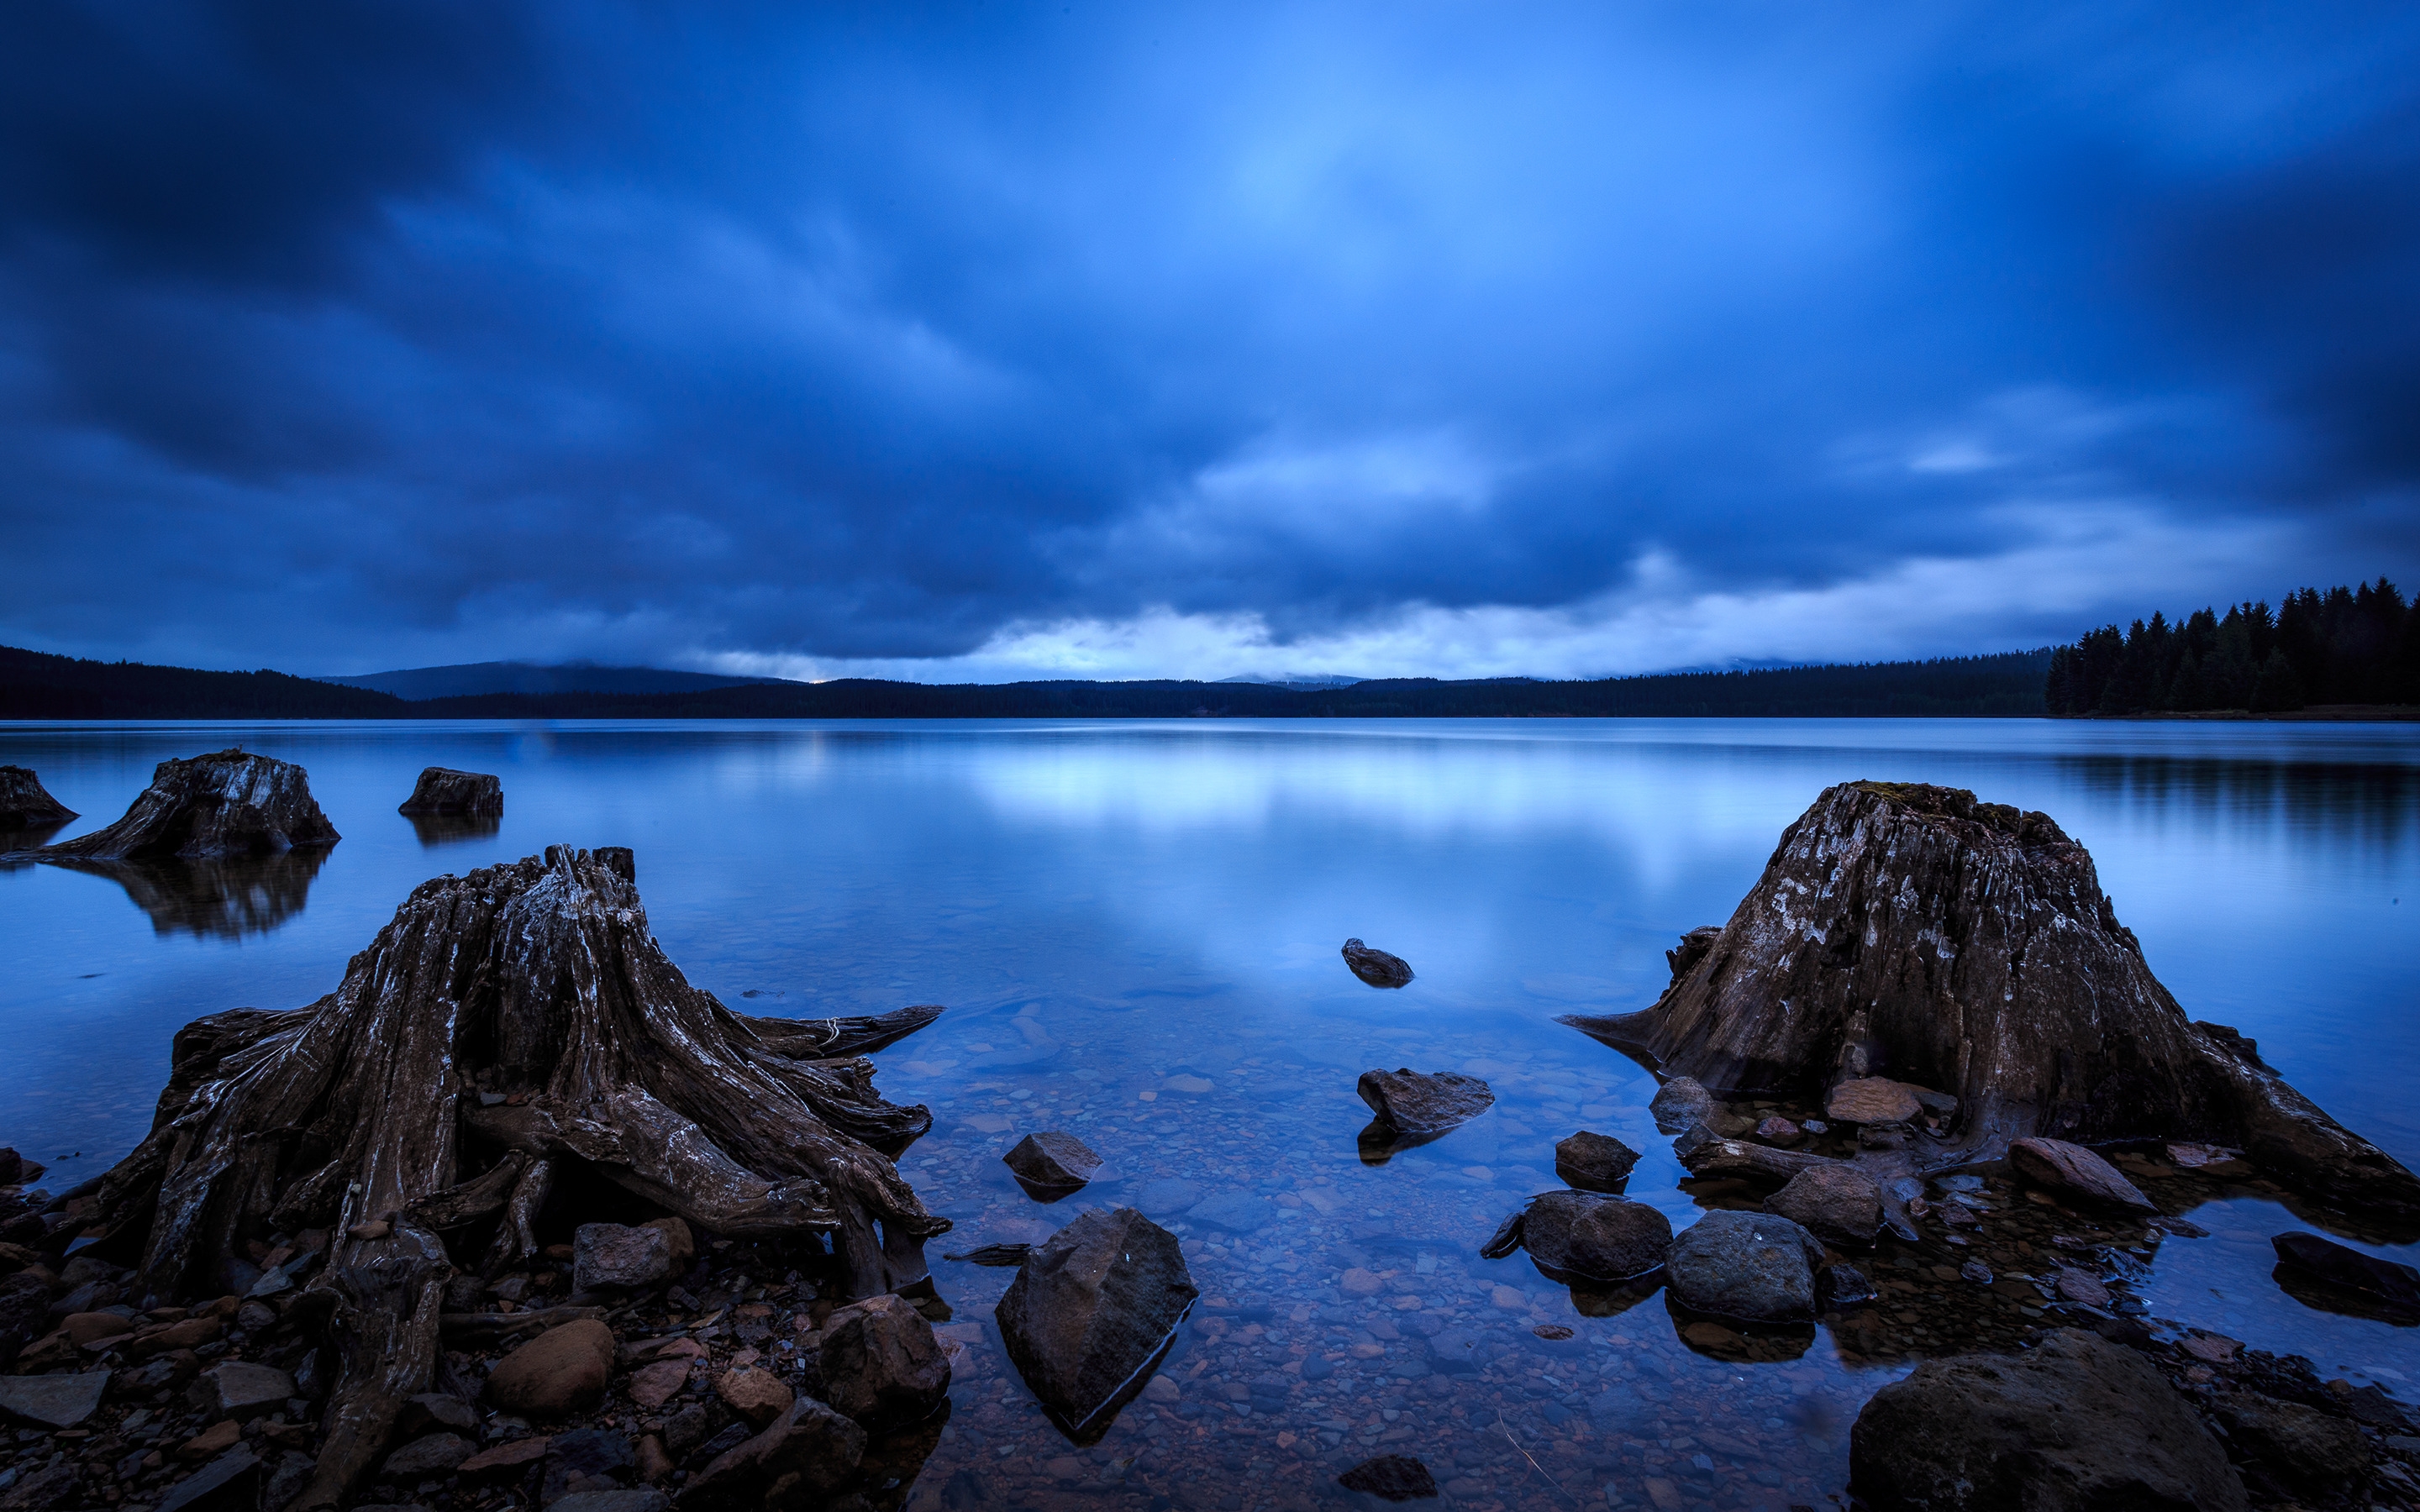 Timothy Lake Oregon for 2880 x 1800 Retina Display resolution